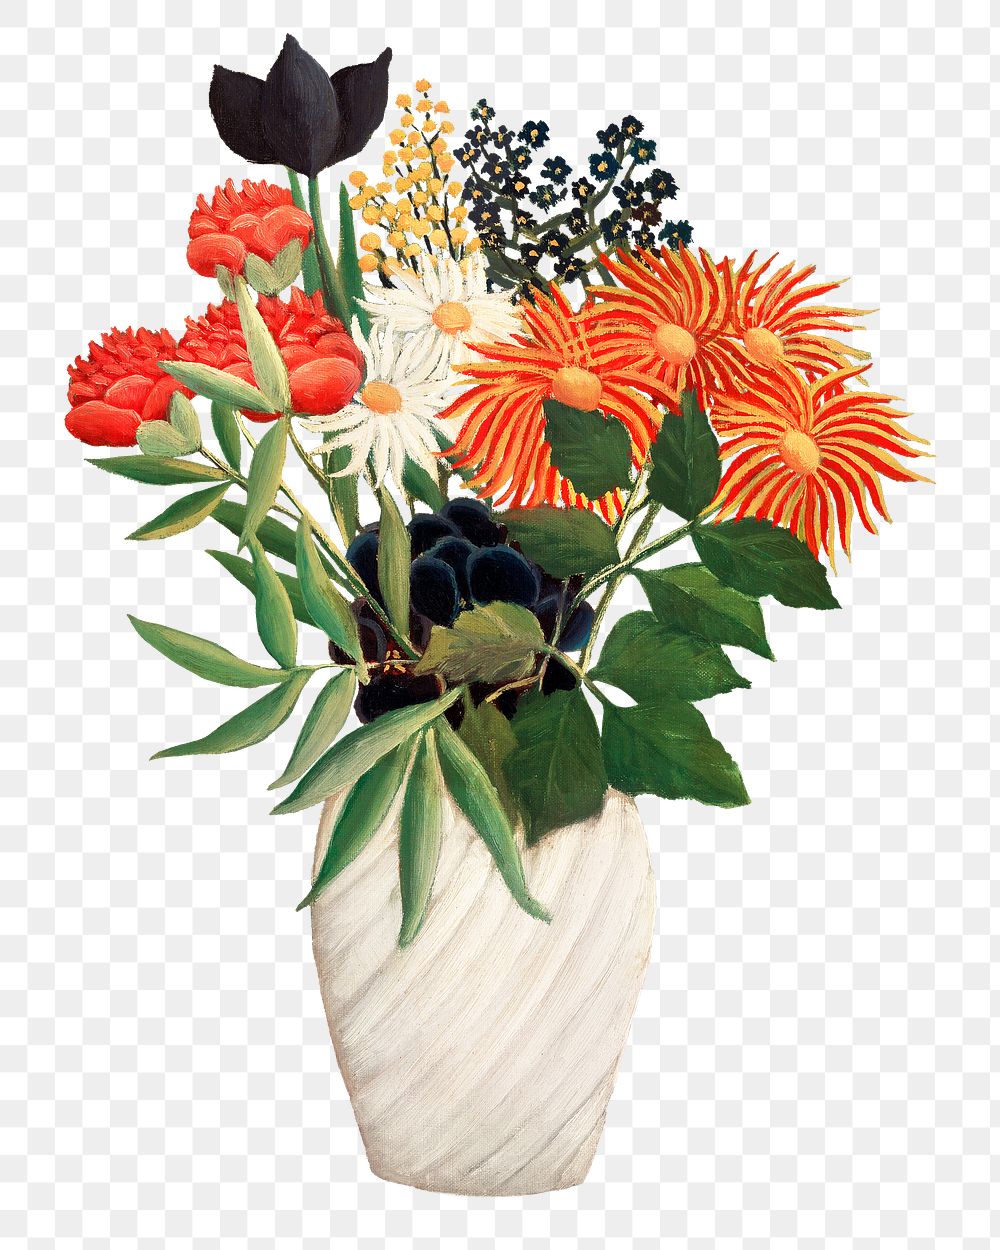 Png flowers in a vase sticker, aesthetic vintage illustration, transparent background